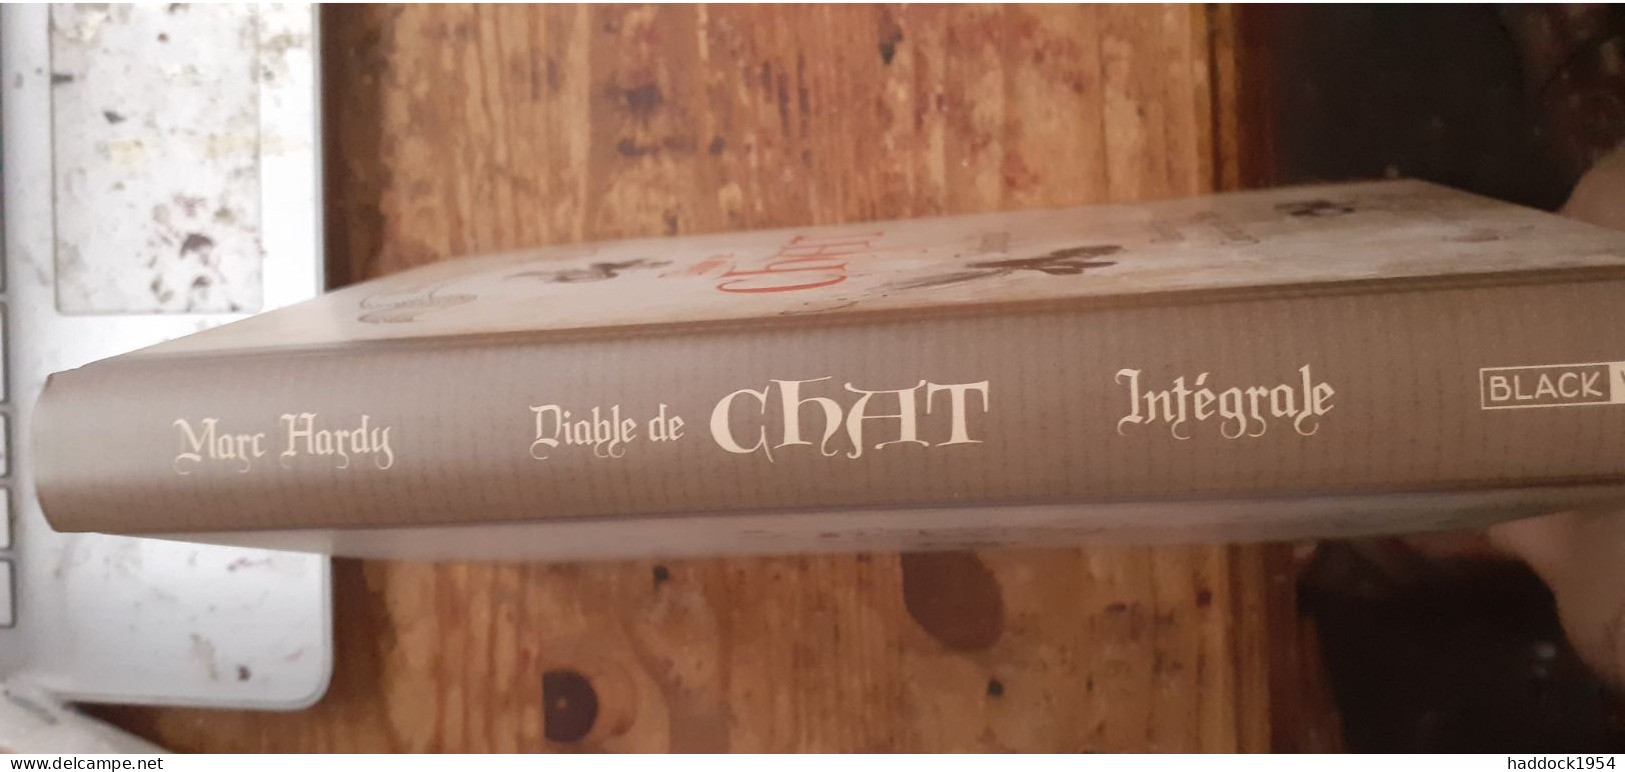 Diable De Chat Intégrale MARC HARDY Black Et White éditions 2019 - First Copies